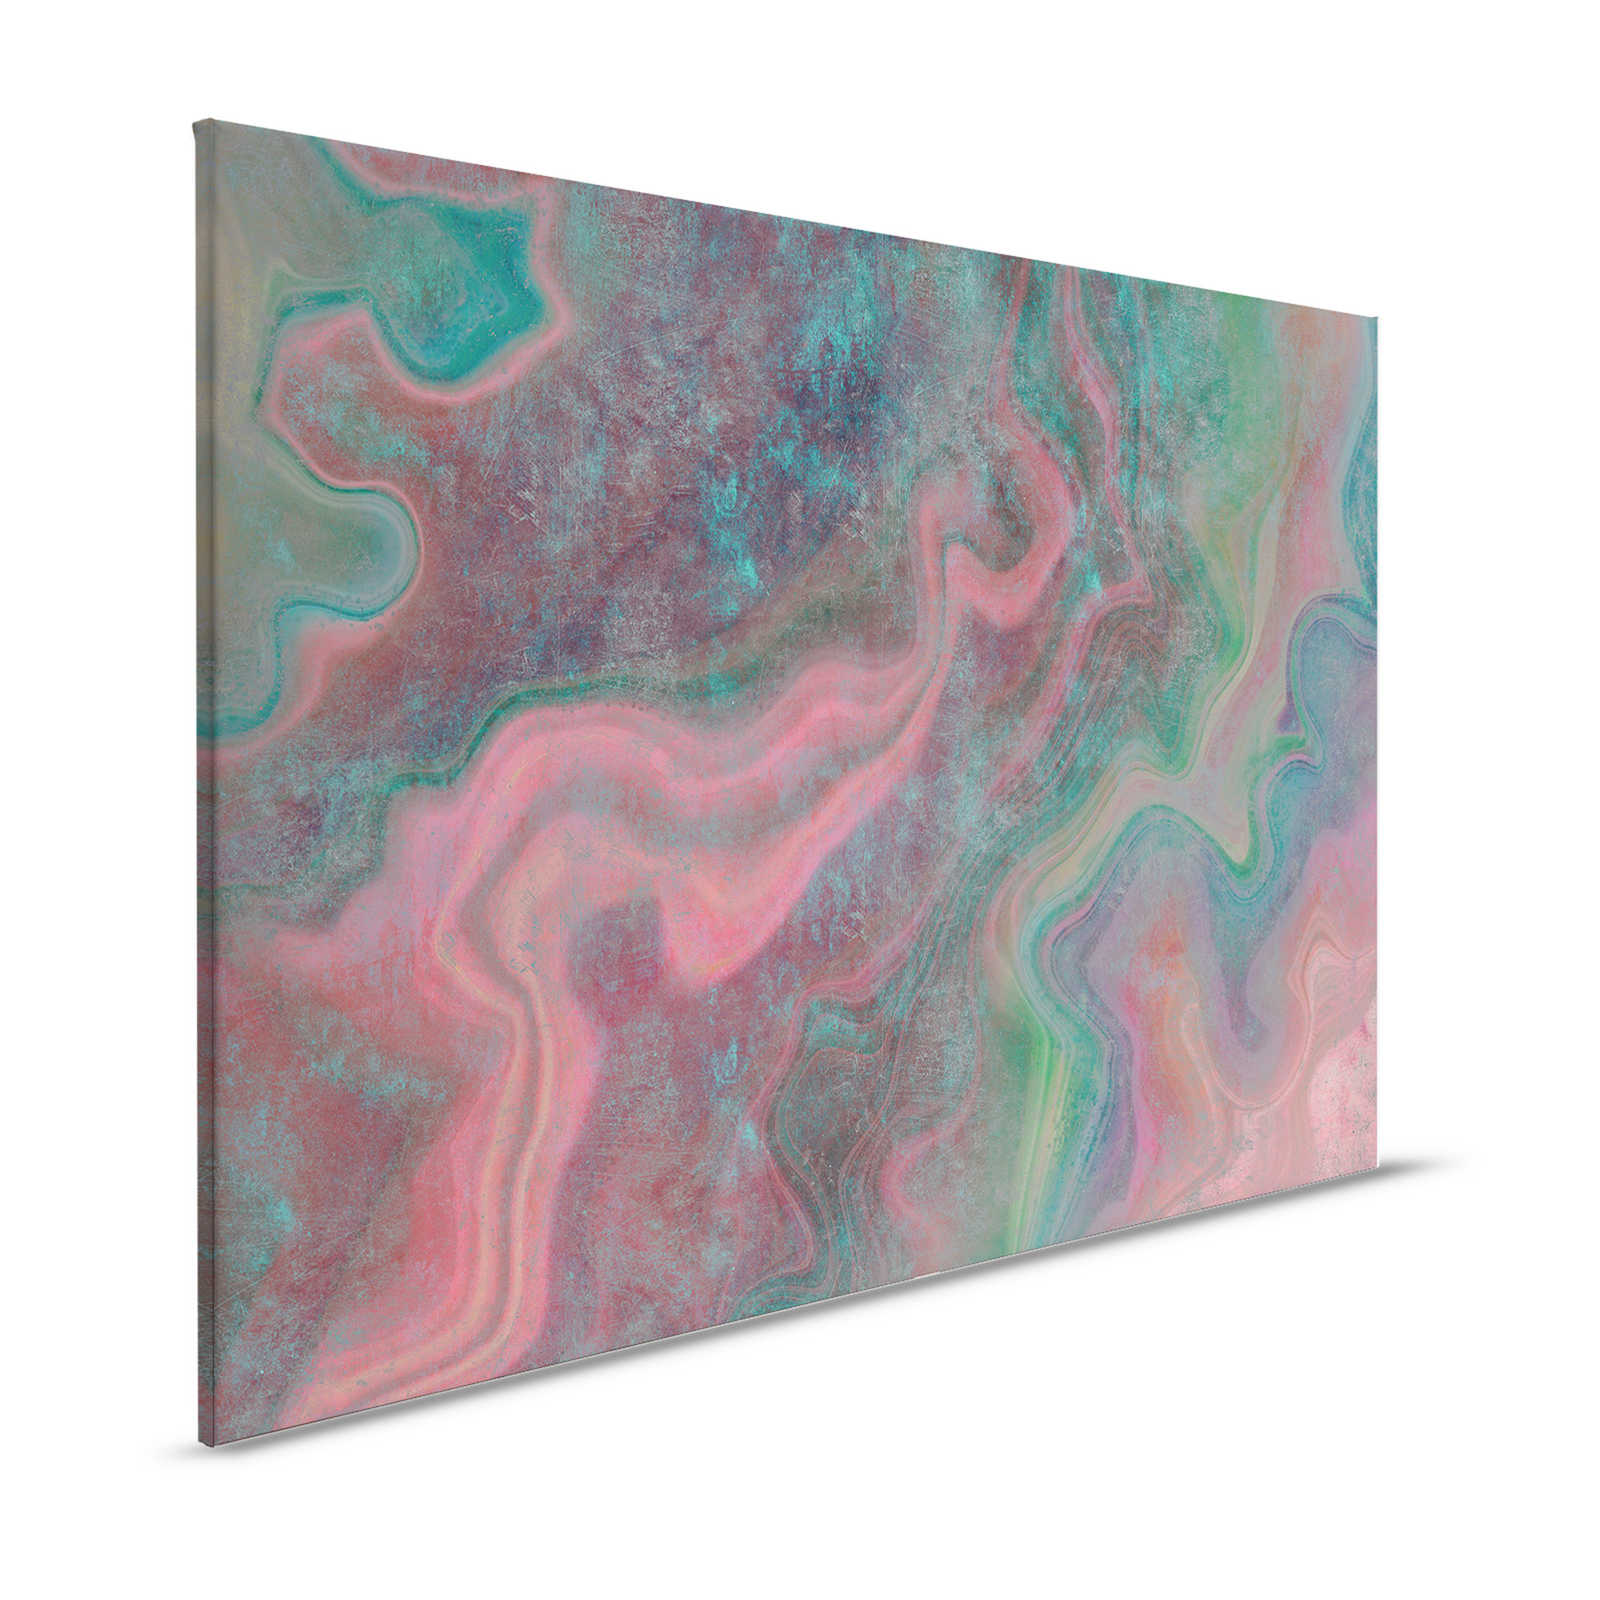 Marble 1 - Marbre coloré pour mettre en valeur la toile avec structure rayée - 1,20 m x 0,80 m
